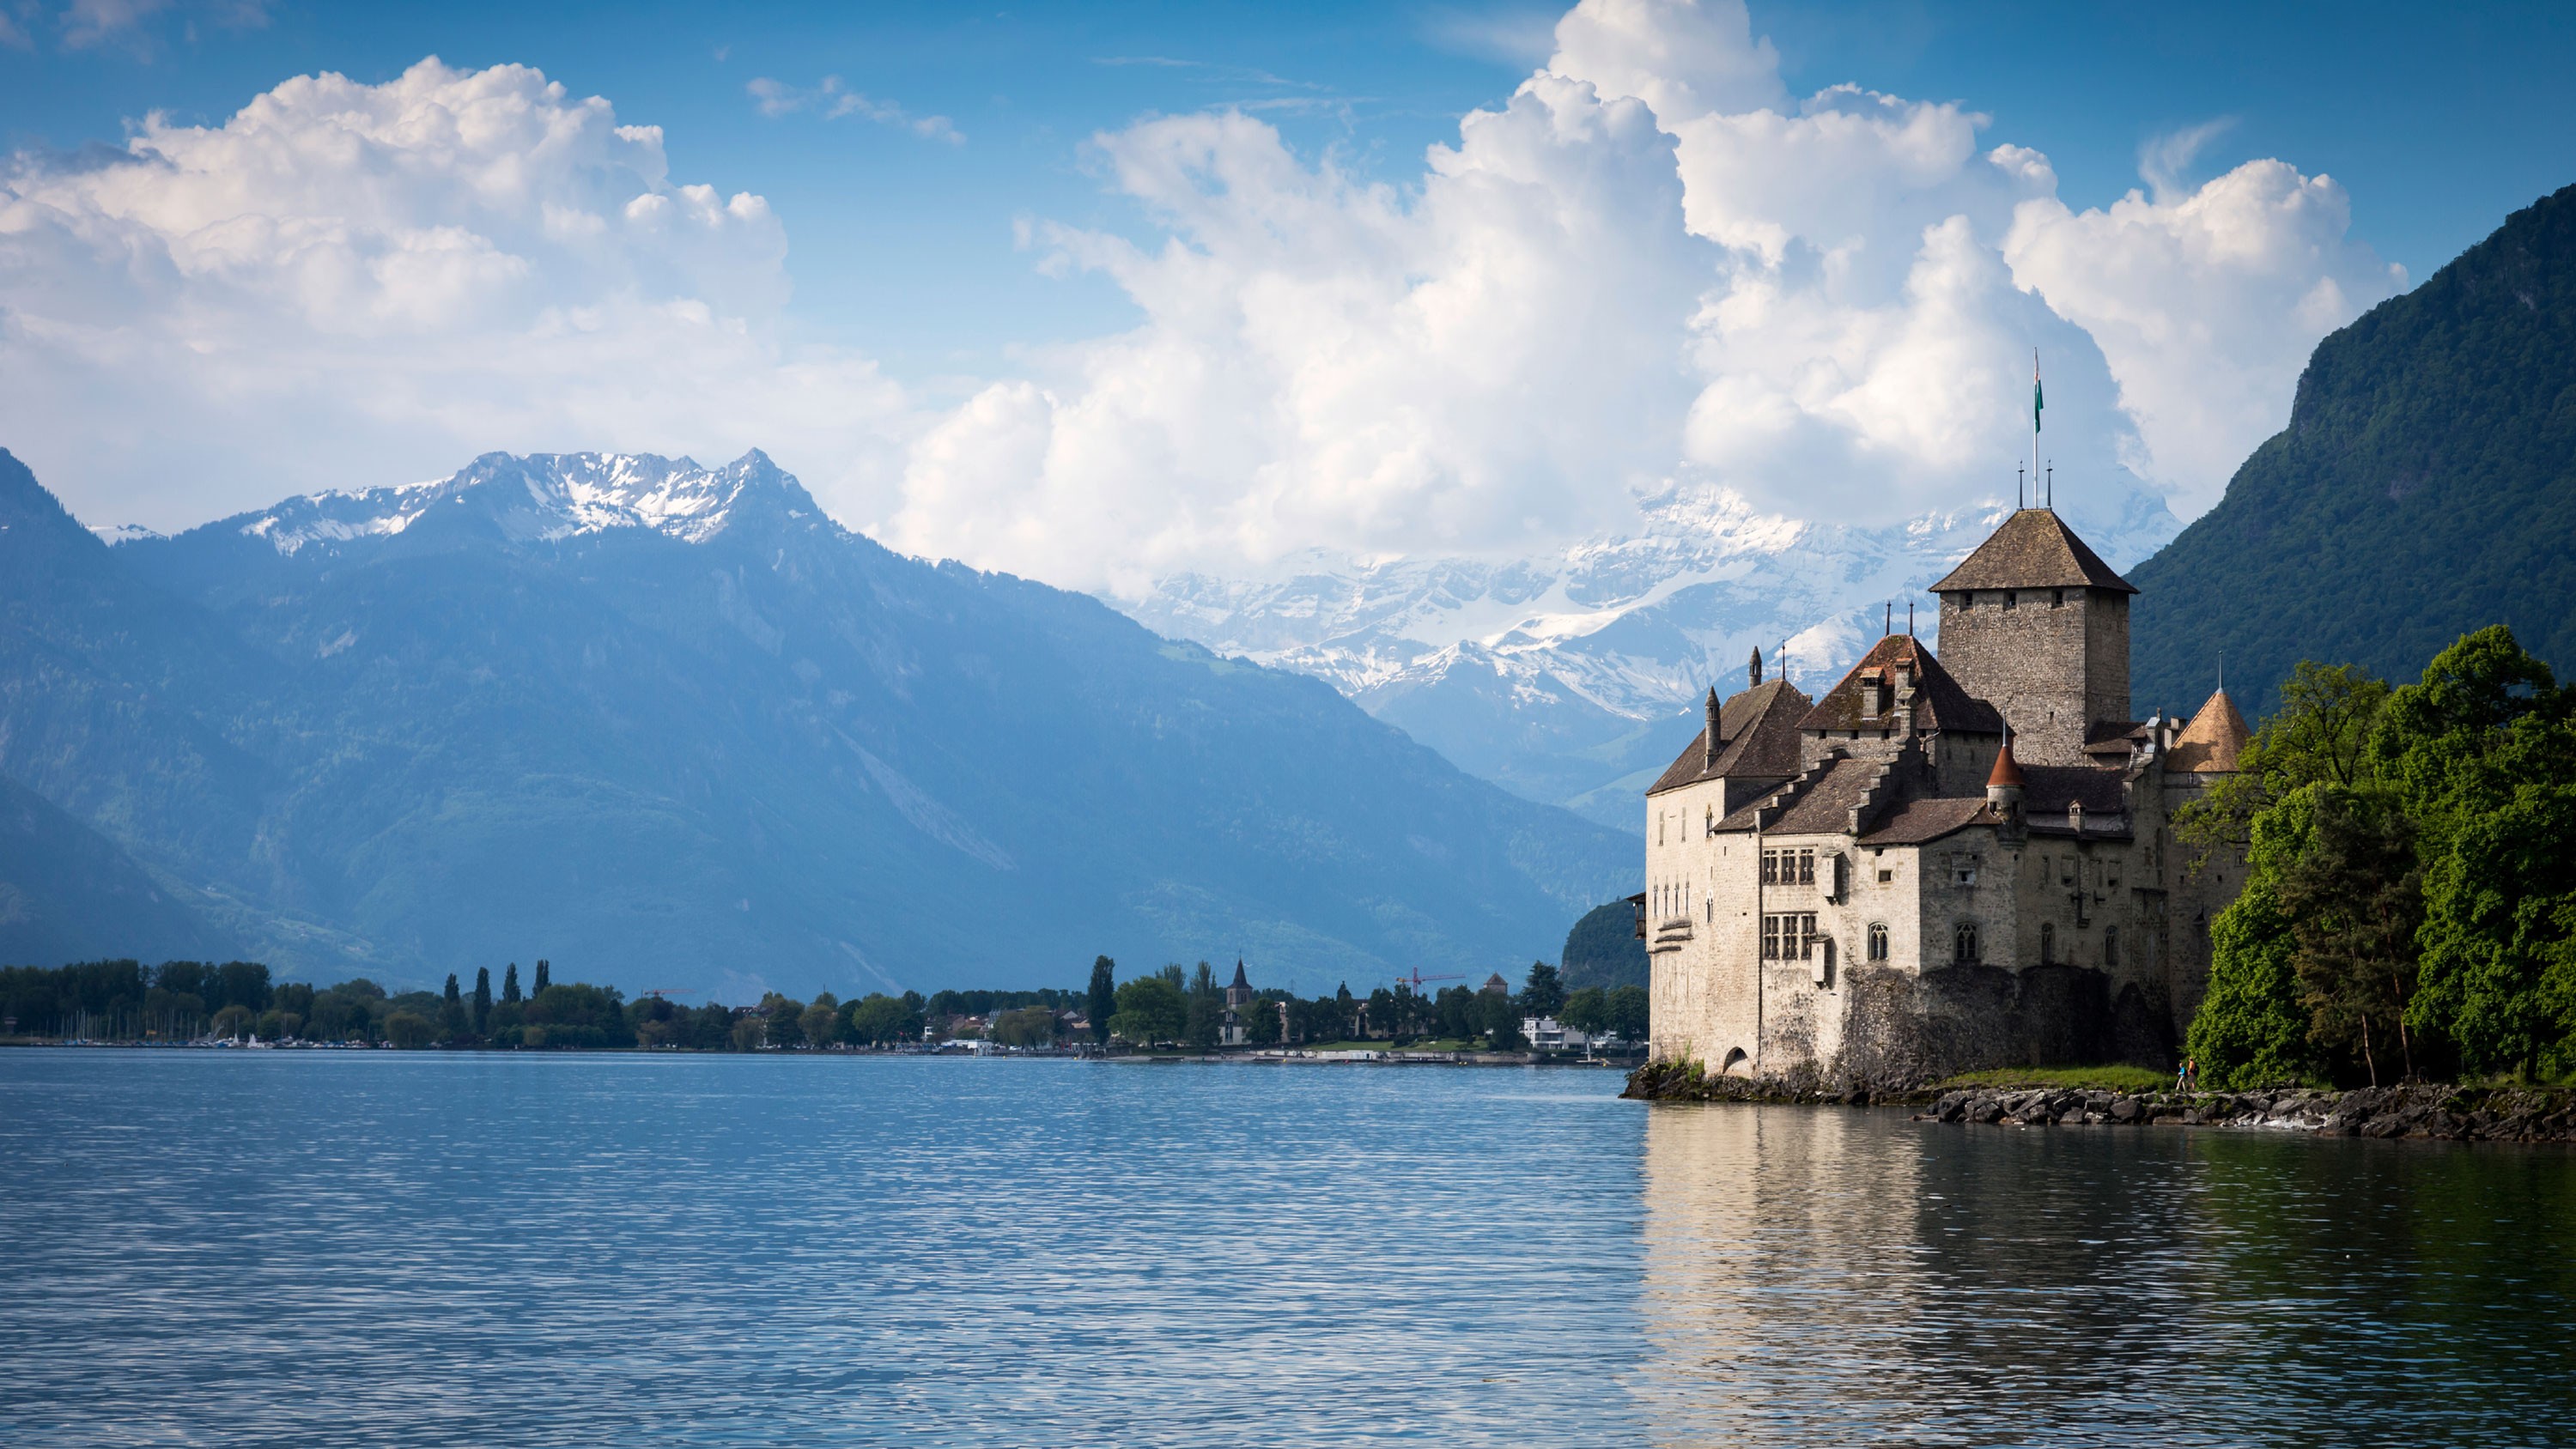 Montreux Switzerland and Lake Geneva Two Night Getaway